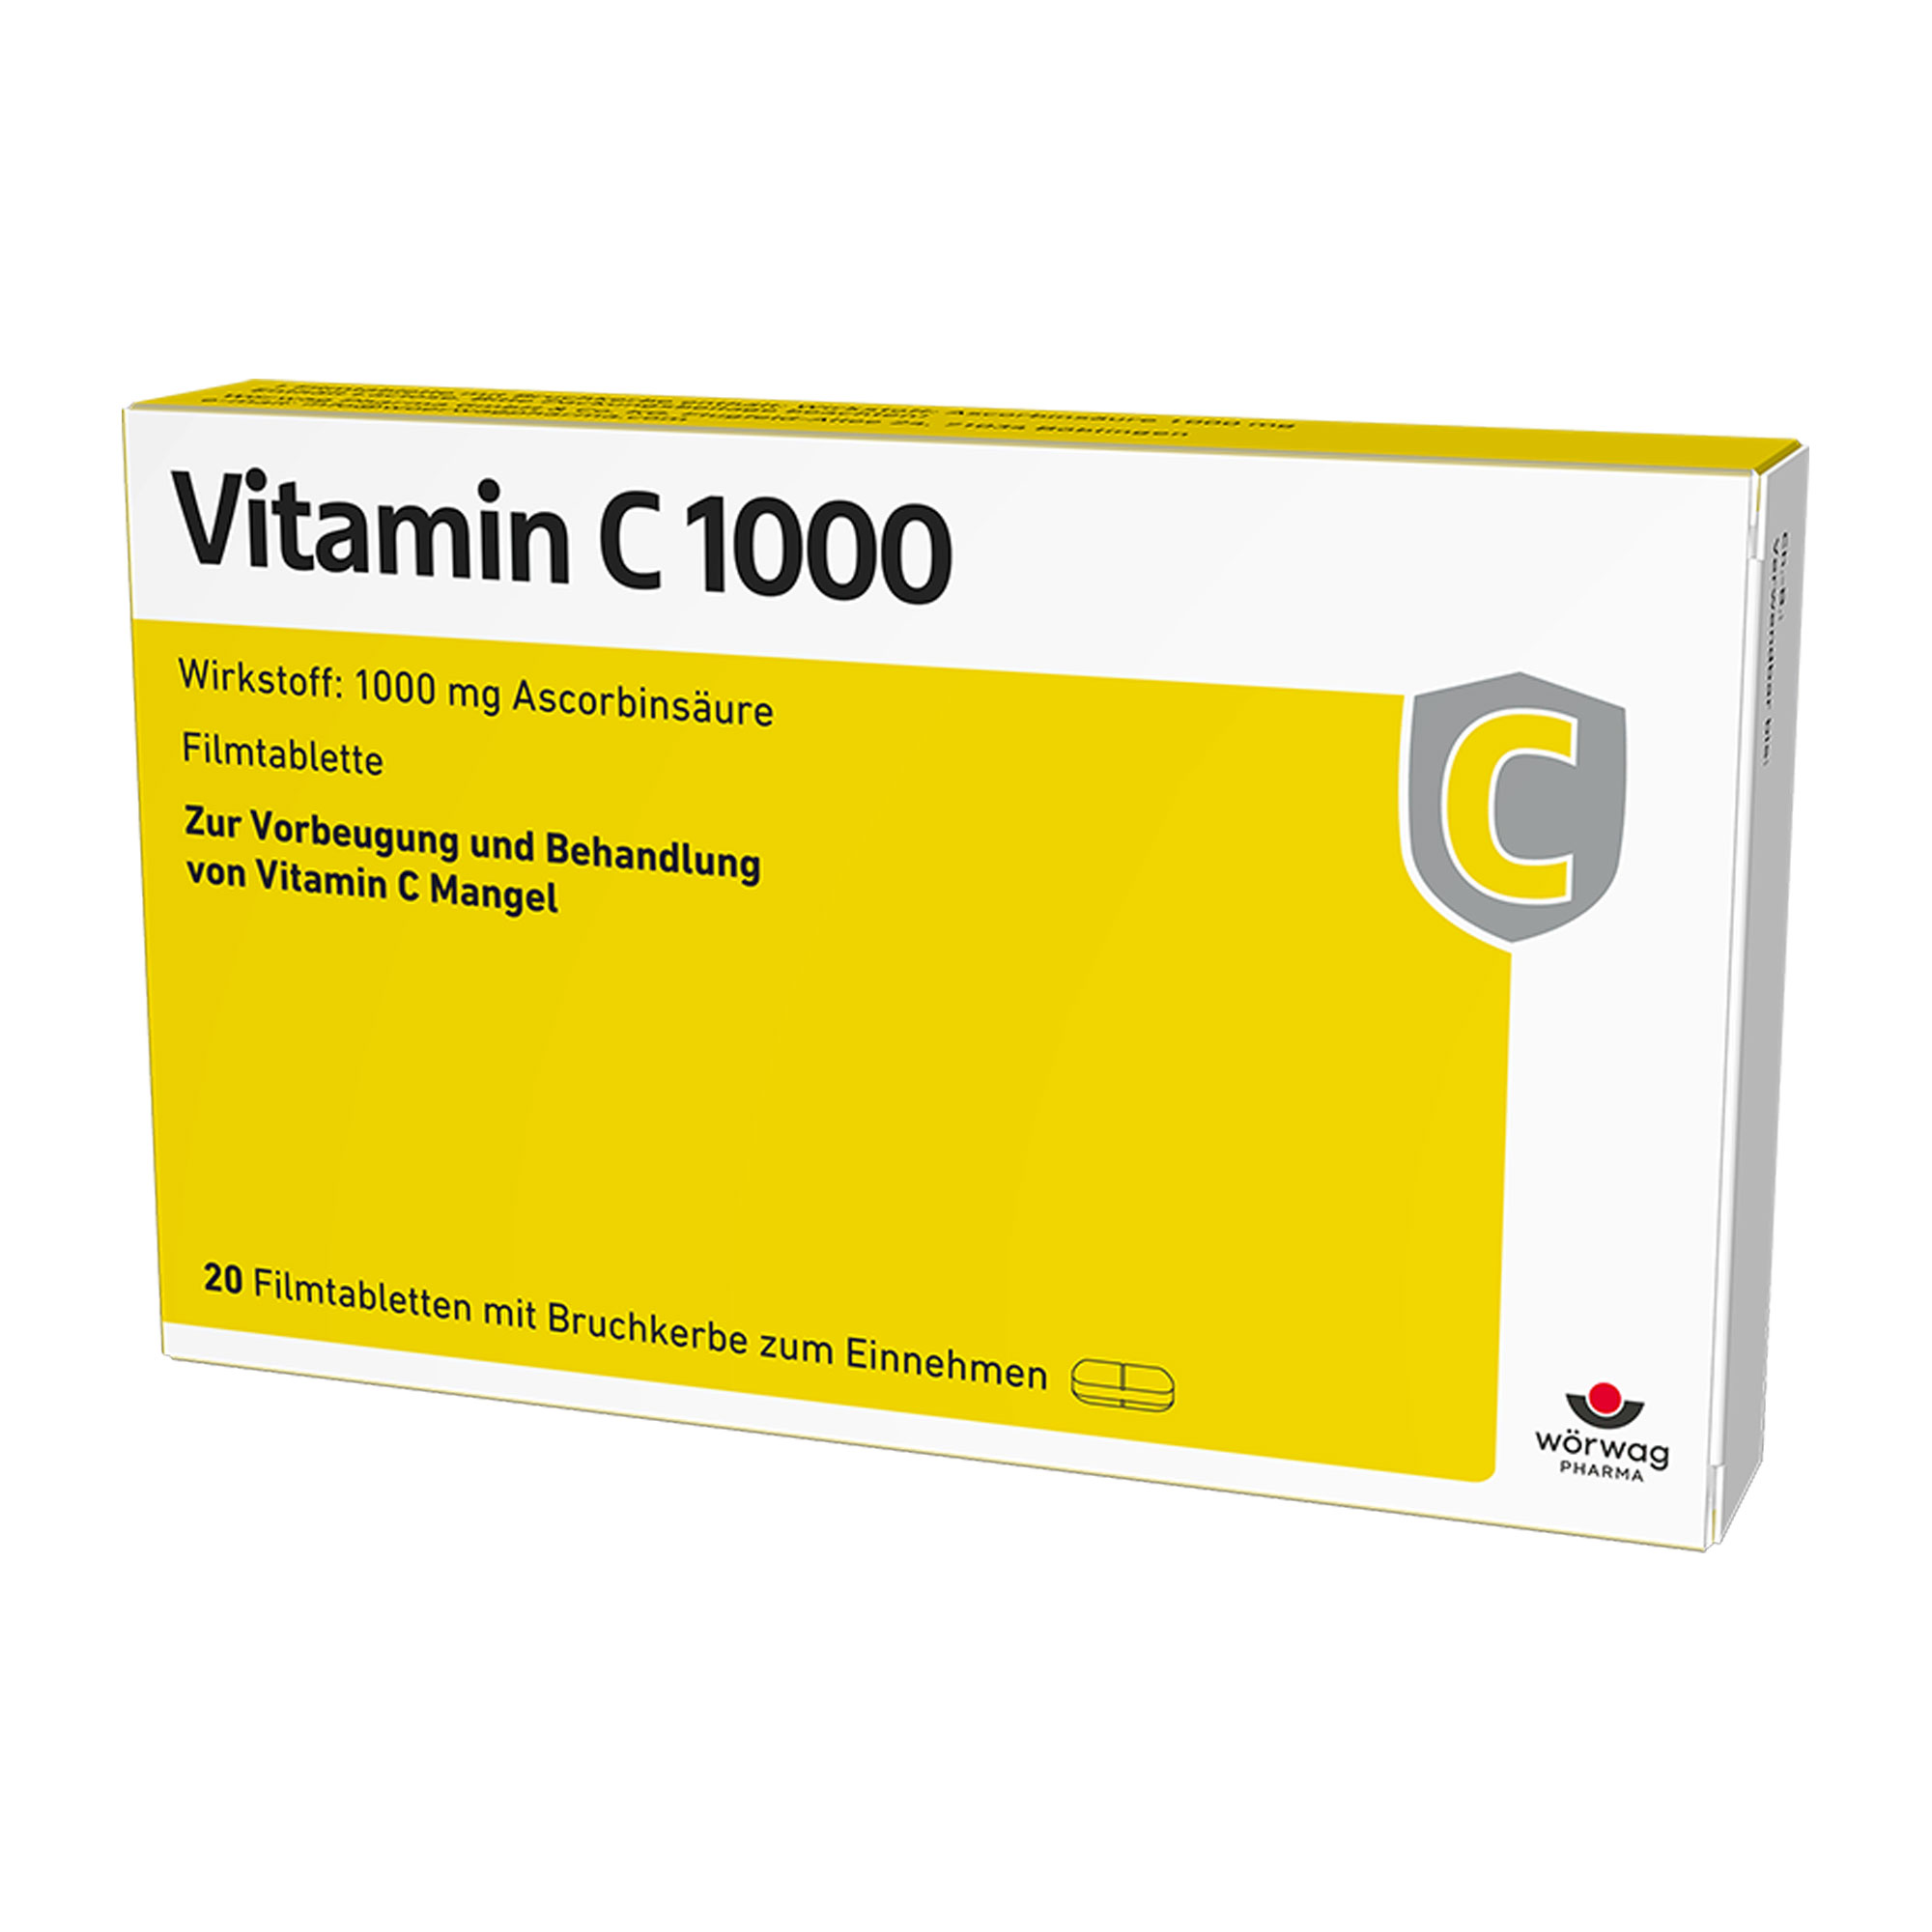 Vitamin-C-Präparat zur Vorbeugung eines Vitamin-C-Mangels und zur Behandlung von Vitamin-C-Mangel-Krankheiten.